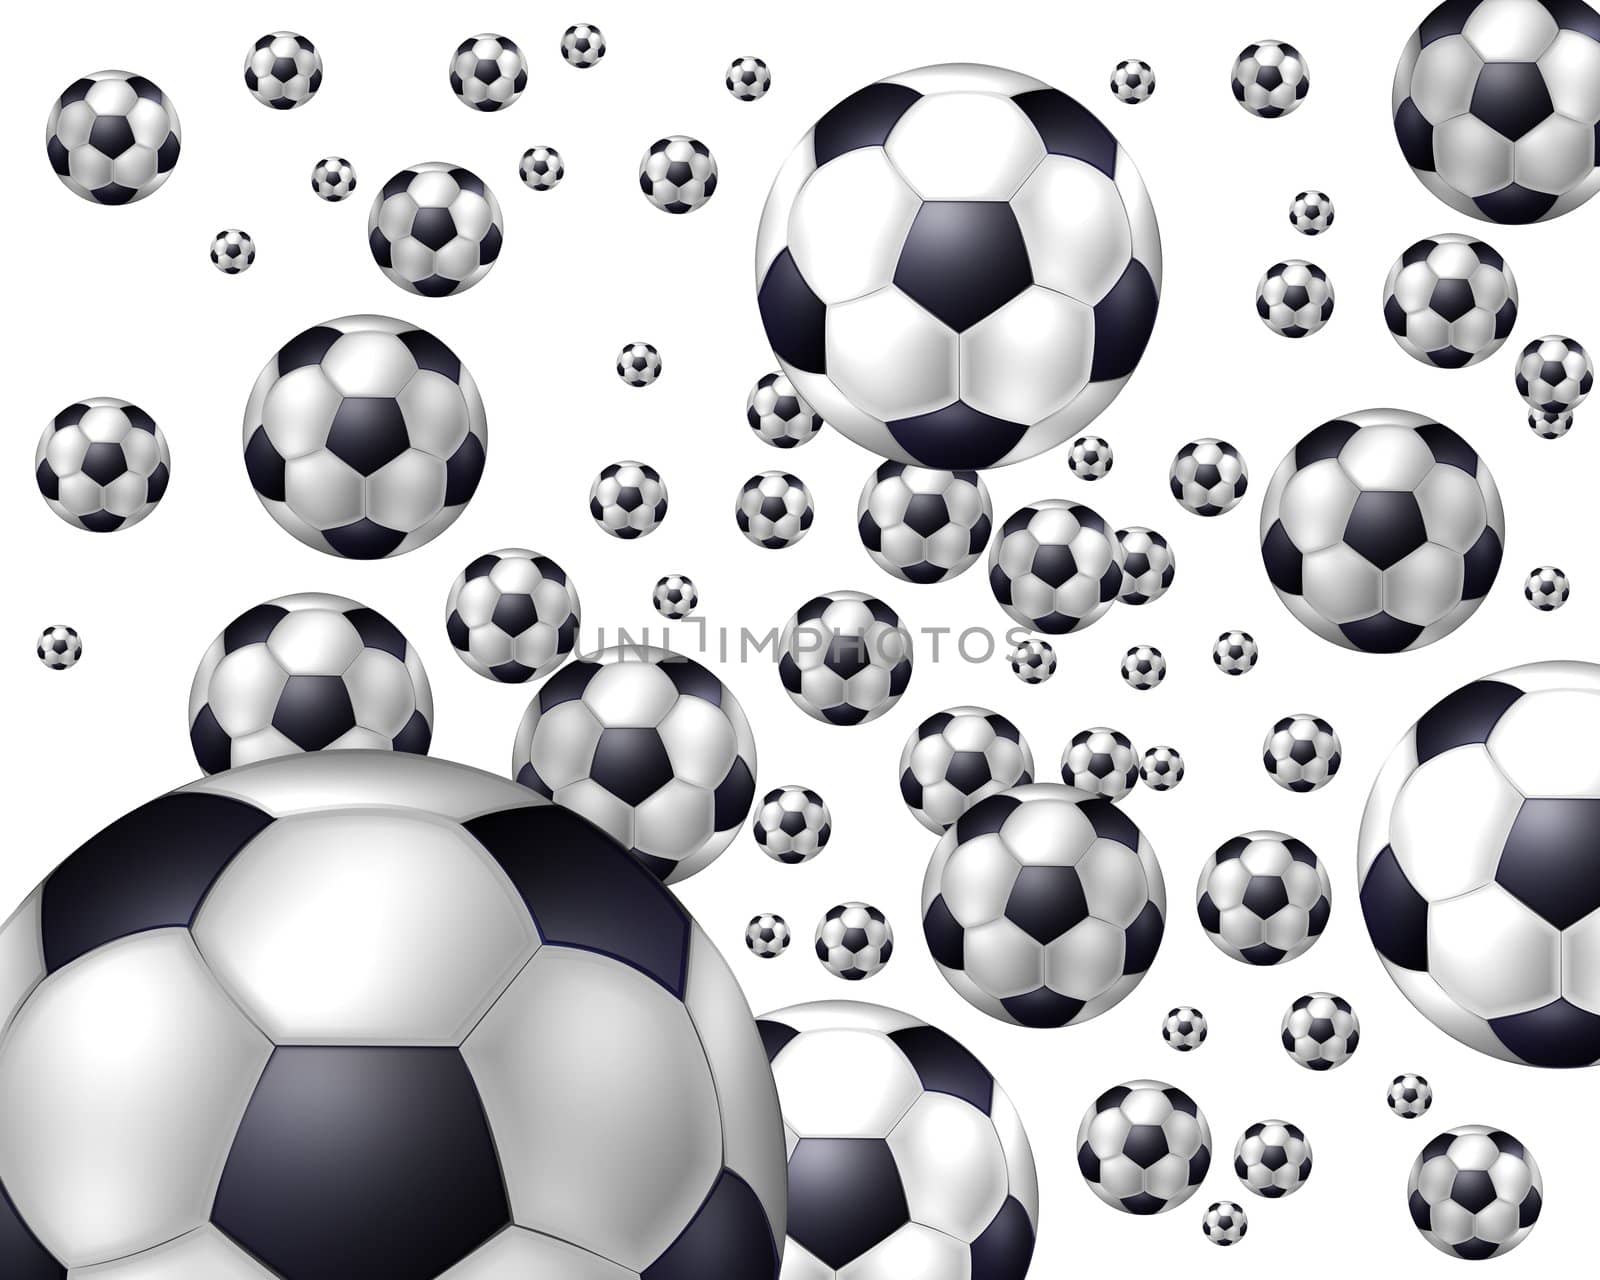 Flying Balls - Soccer